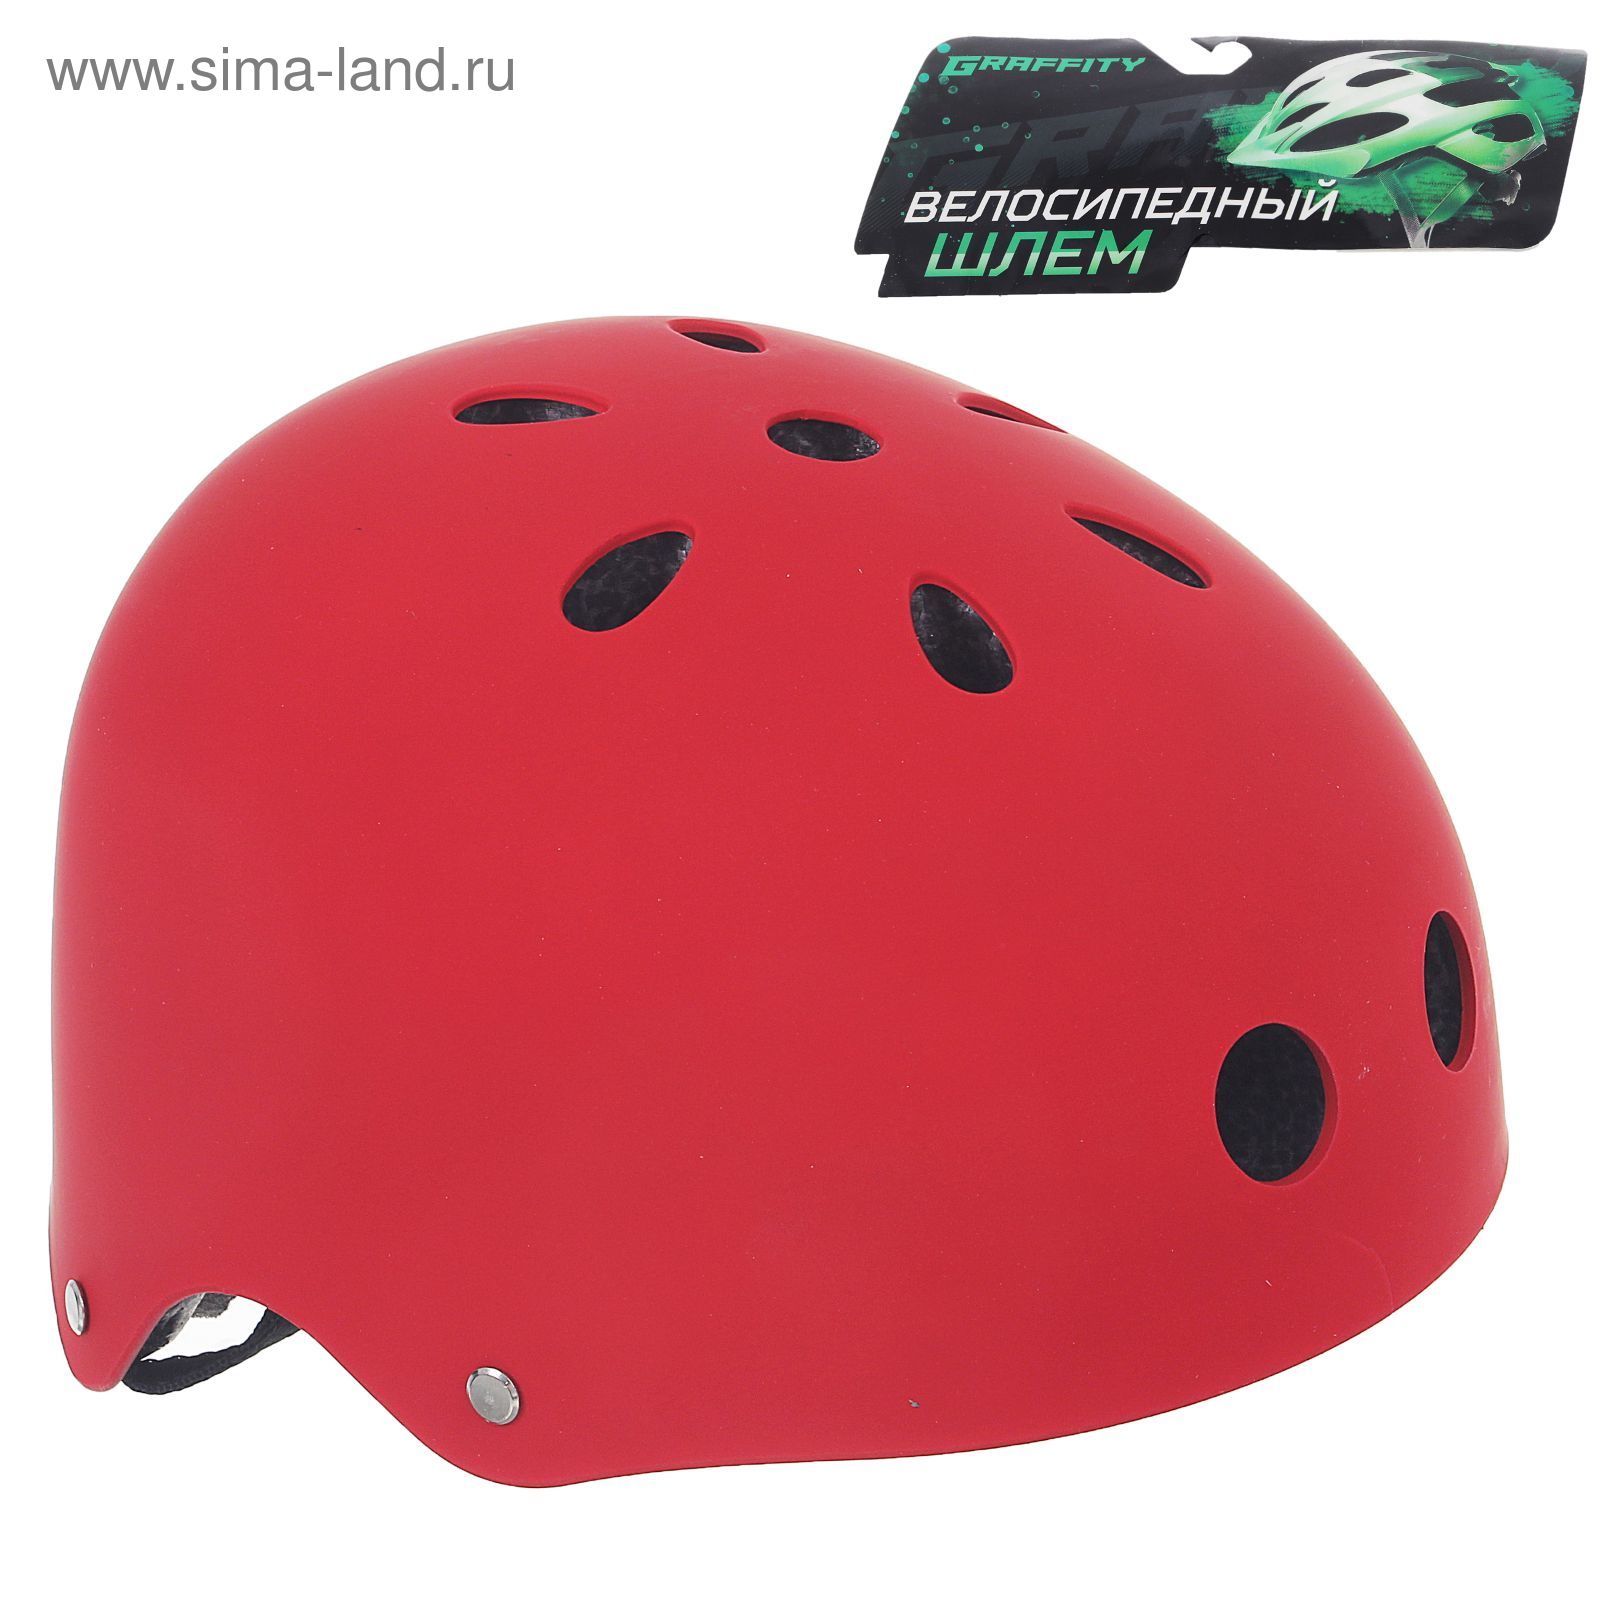 Шлем велосипедиста взрослый ОТ-GK1, матовый, красный d=56 см